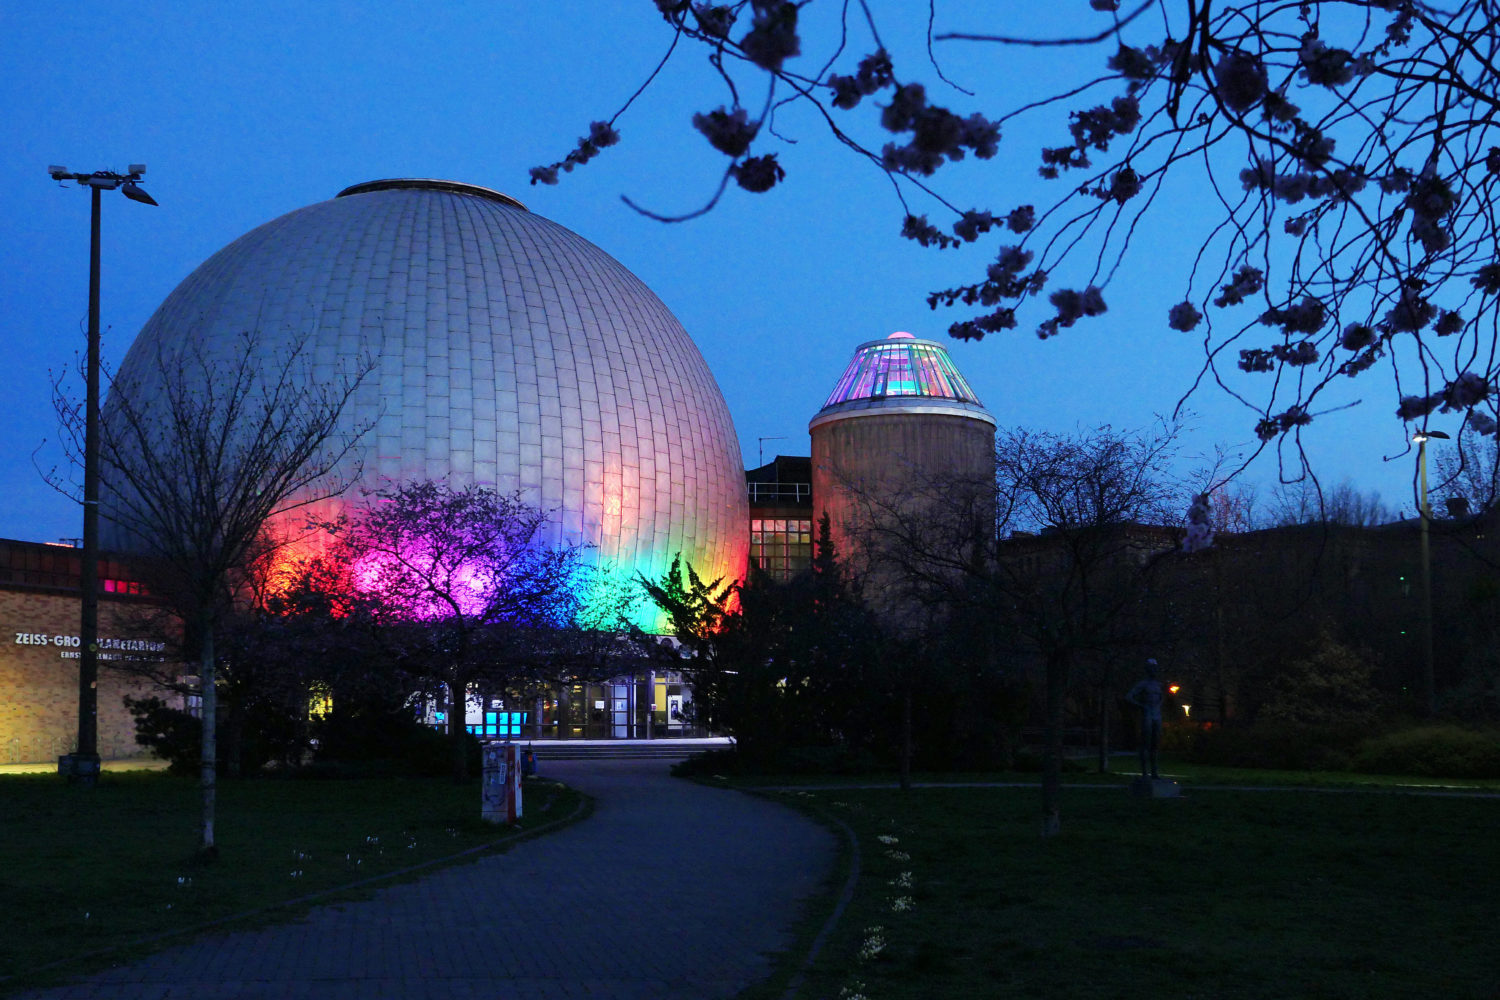 Veranstaltungen Juli Berlin Im Zeiss Planetarium könnt ihr euch über außerirdisches Leben informieren.